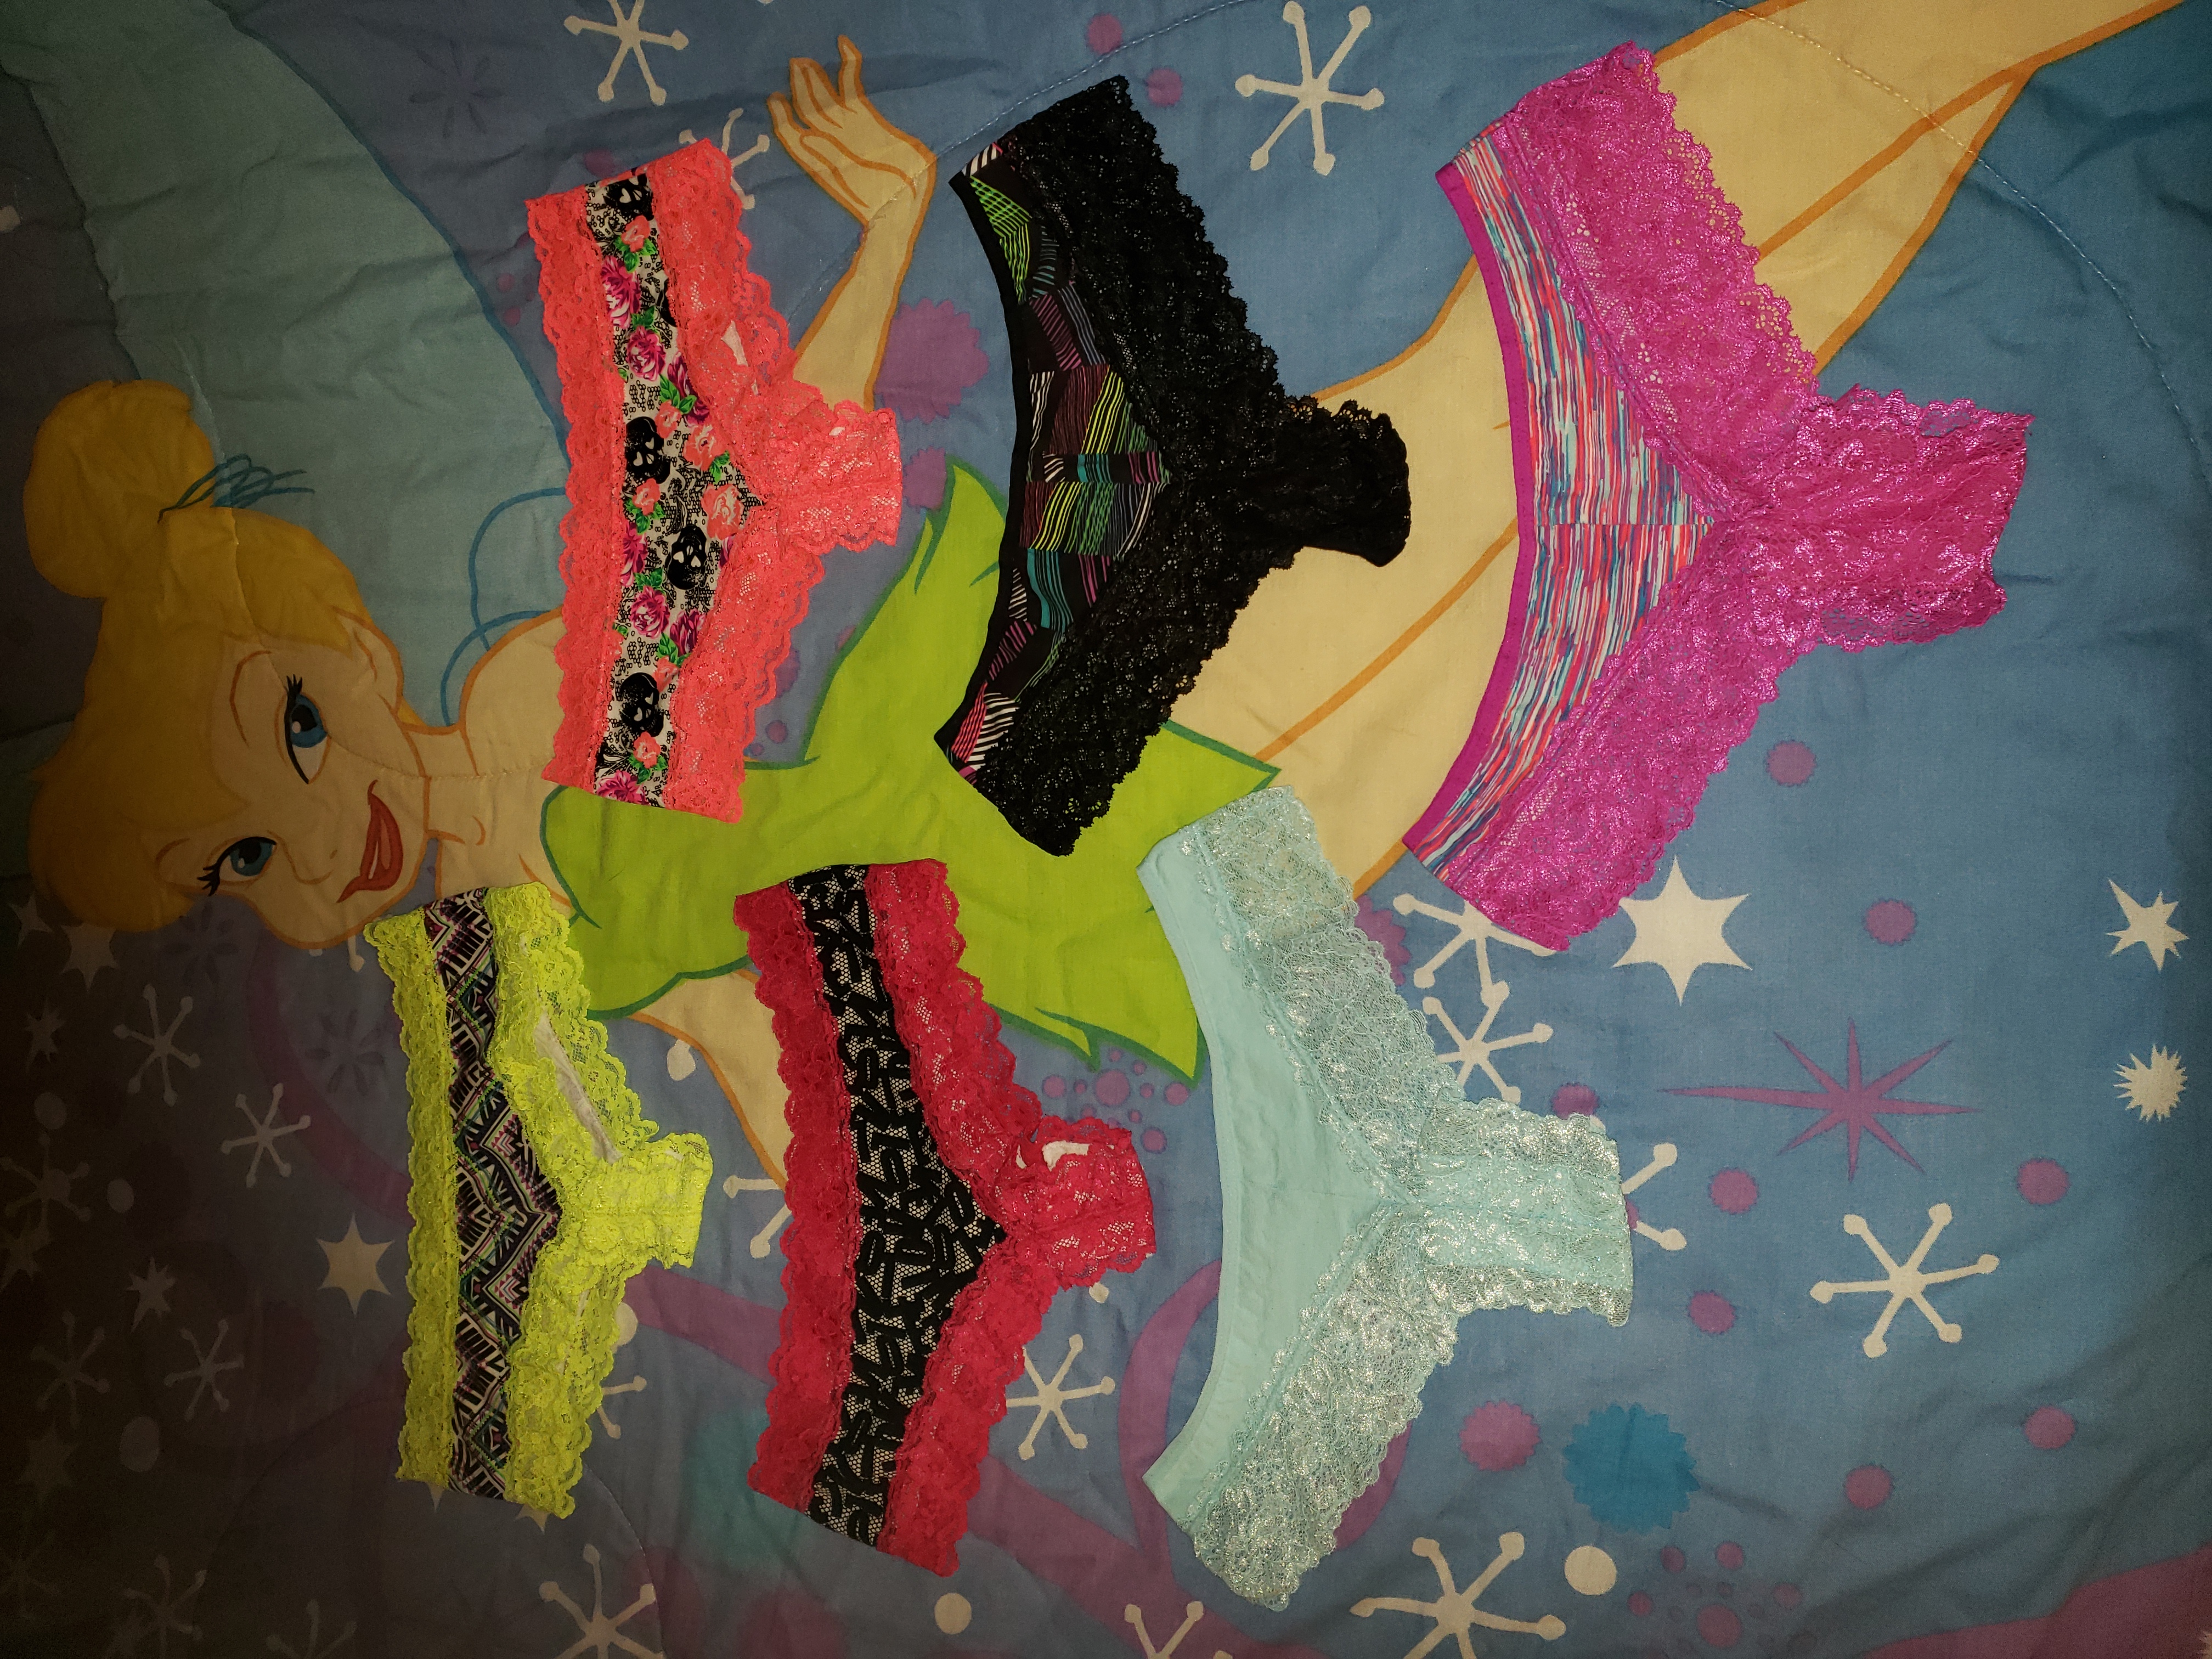 My daughters panties / IMG_8806.JPG @